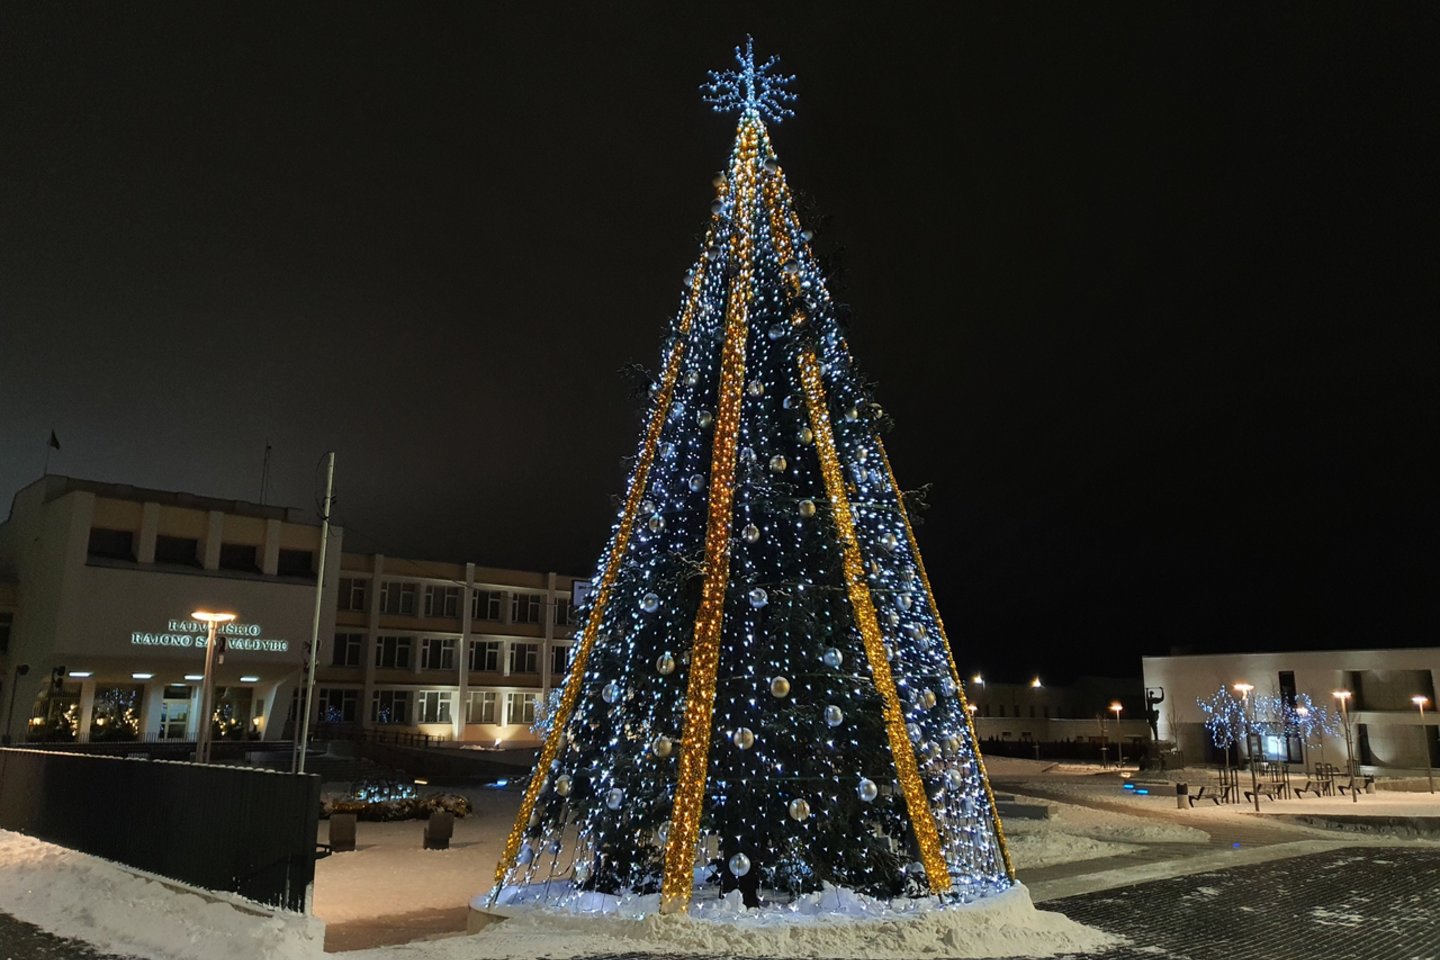 Radviliškiečiai jau gali džiaugtis Kalėdų egle.<br>Radviliškio savivaldybės nuotr.